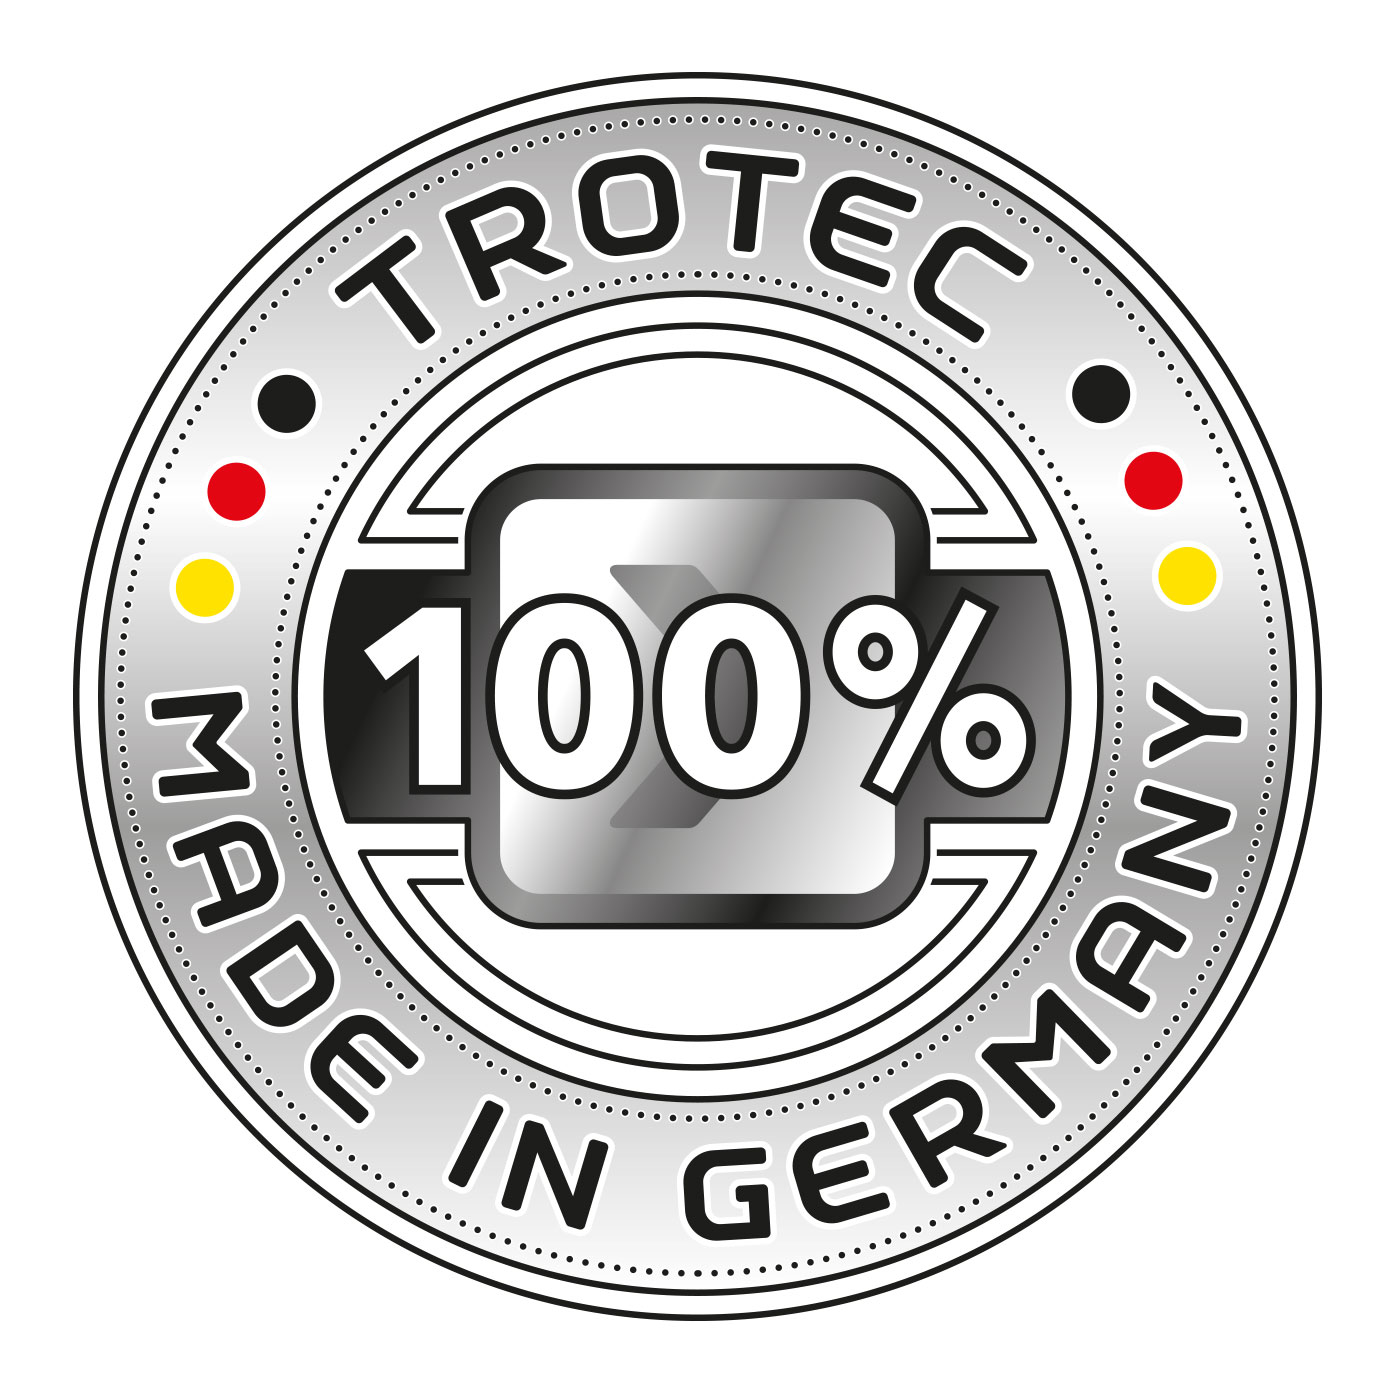 Profesionalna kvaliteta "made in Germany" - originalna proizvodnja tvrtke Trotec